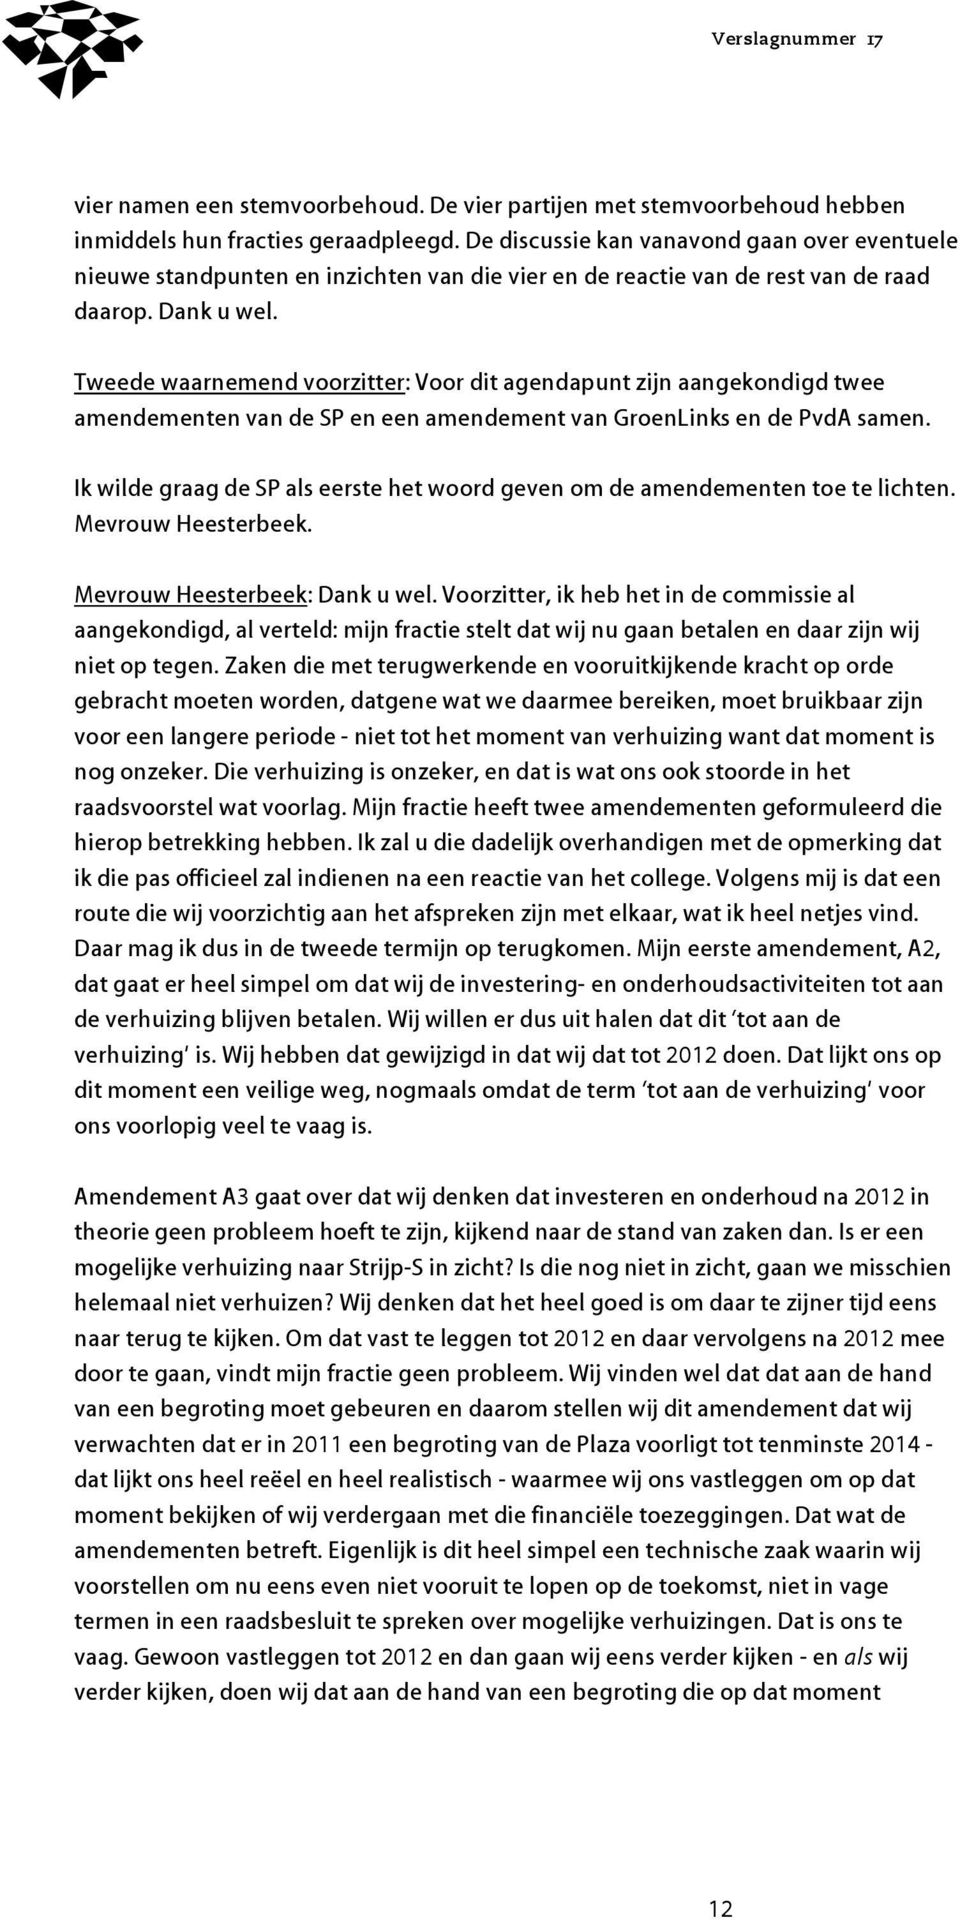 Tweede waarnemend voorzitter: Voor dit agendapunt zijn aangekondigd twee amendementen van de SP en een amendement van GroenLinks en de PvdA samen.